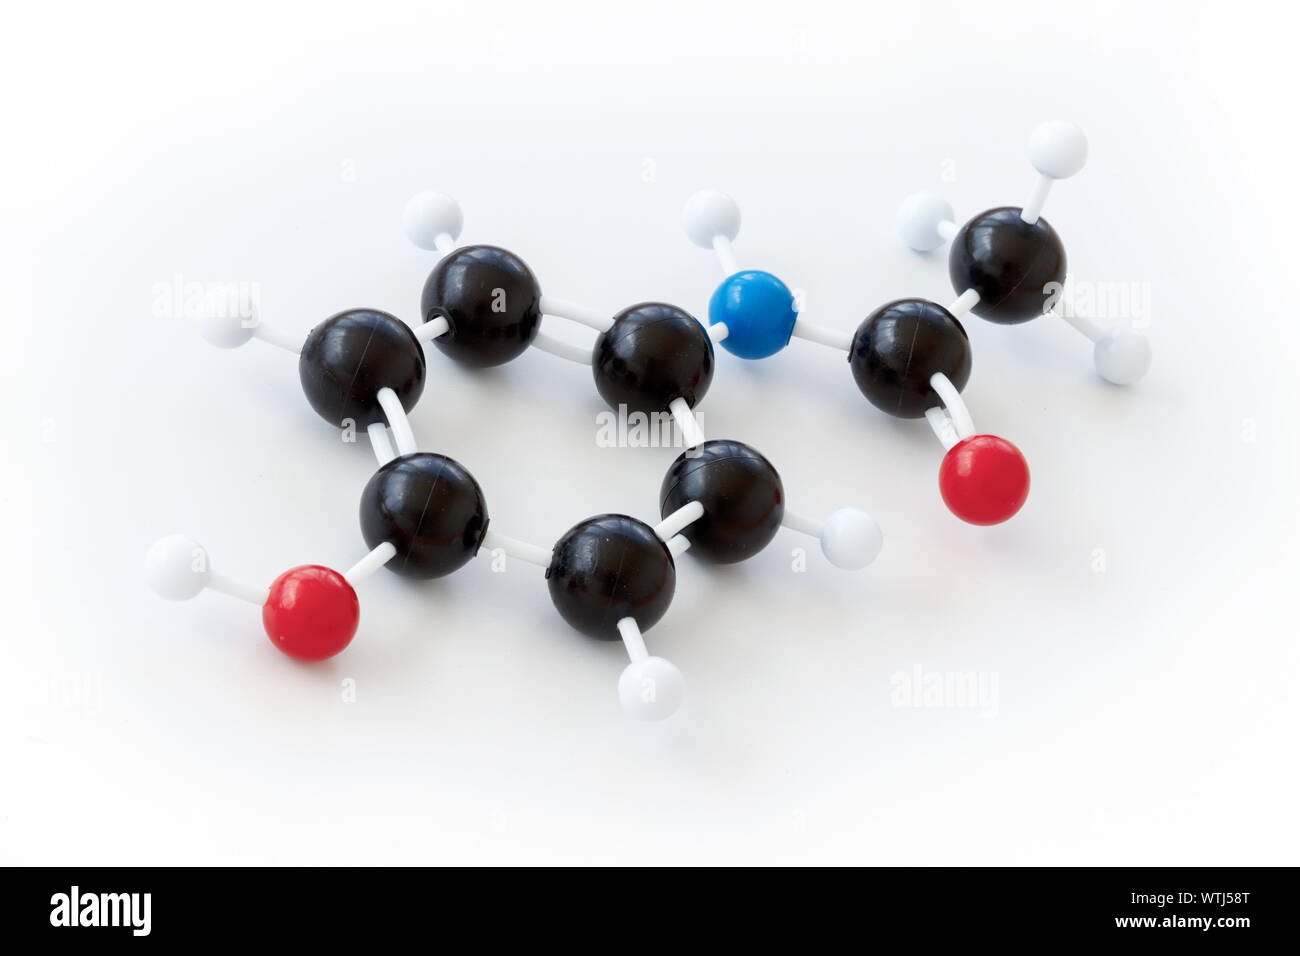 Kunststoff Kugel-und-stick Modell einer paracetamol Molekül mit kekule Struktur auf einem weißen Hintergrund angezeigt. Paracetamol, auch Acetaminophen genannt oder Ap Stockfoto